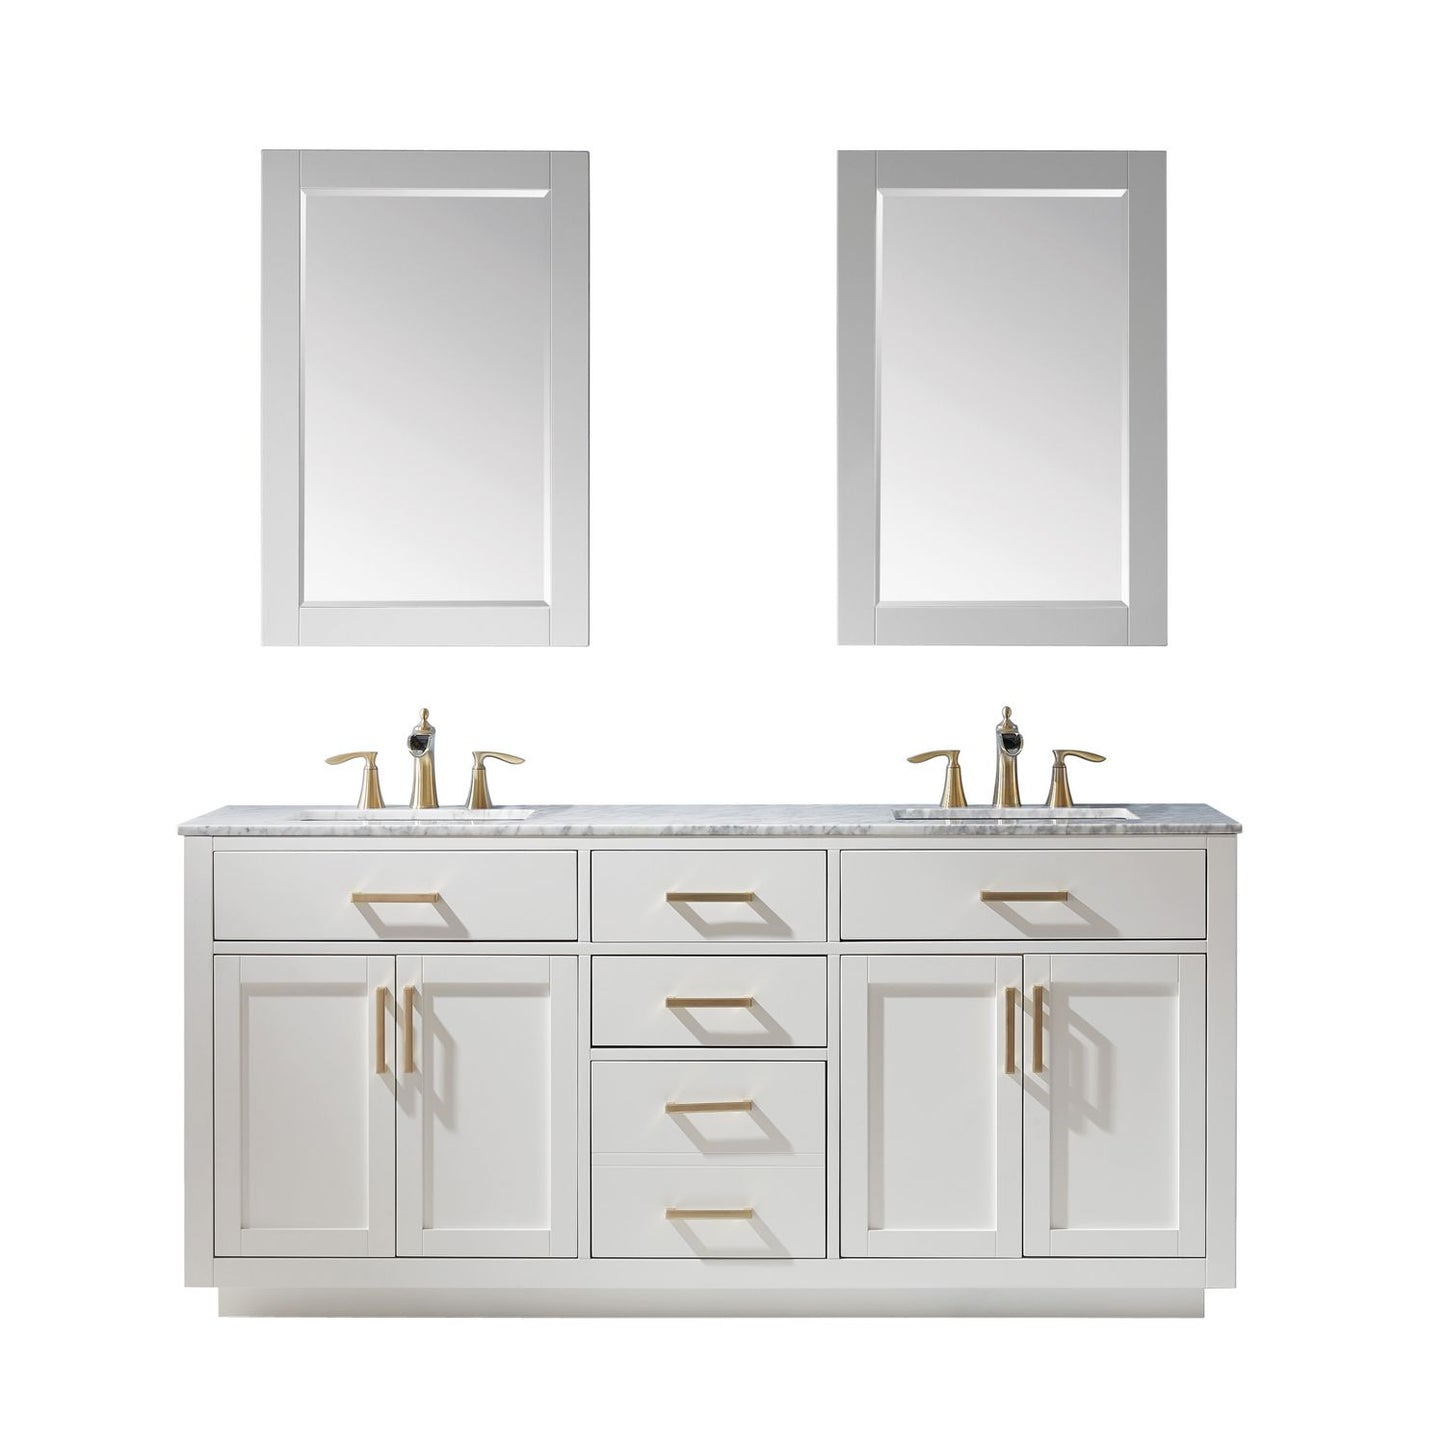 Altair Ivy 72" Double Bathroom Vanity Set Countertop with Mirror - Luxe Bathroom Vanities